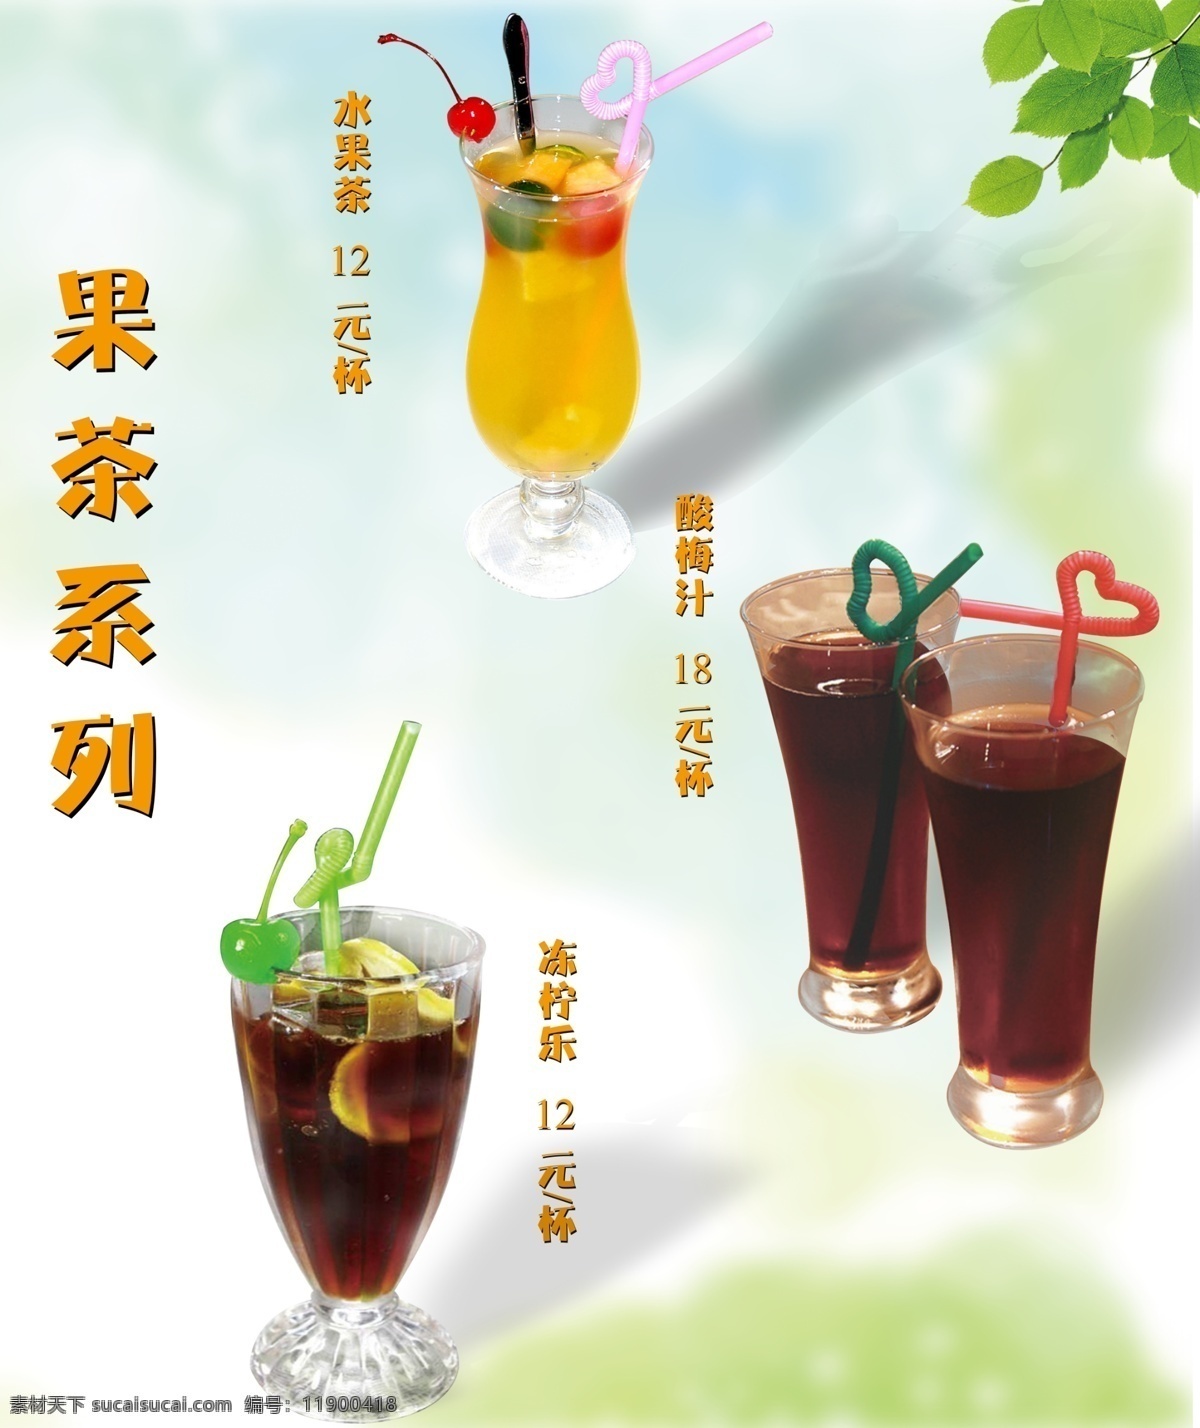 果茶系列 果茶系类 饮料 水果茶 汽水 海报